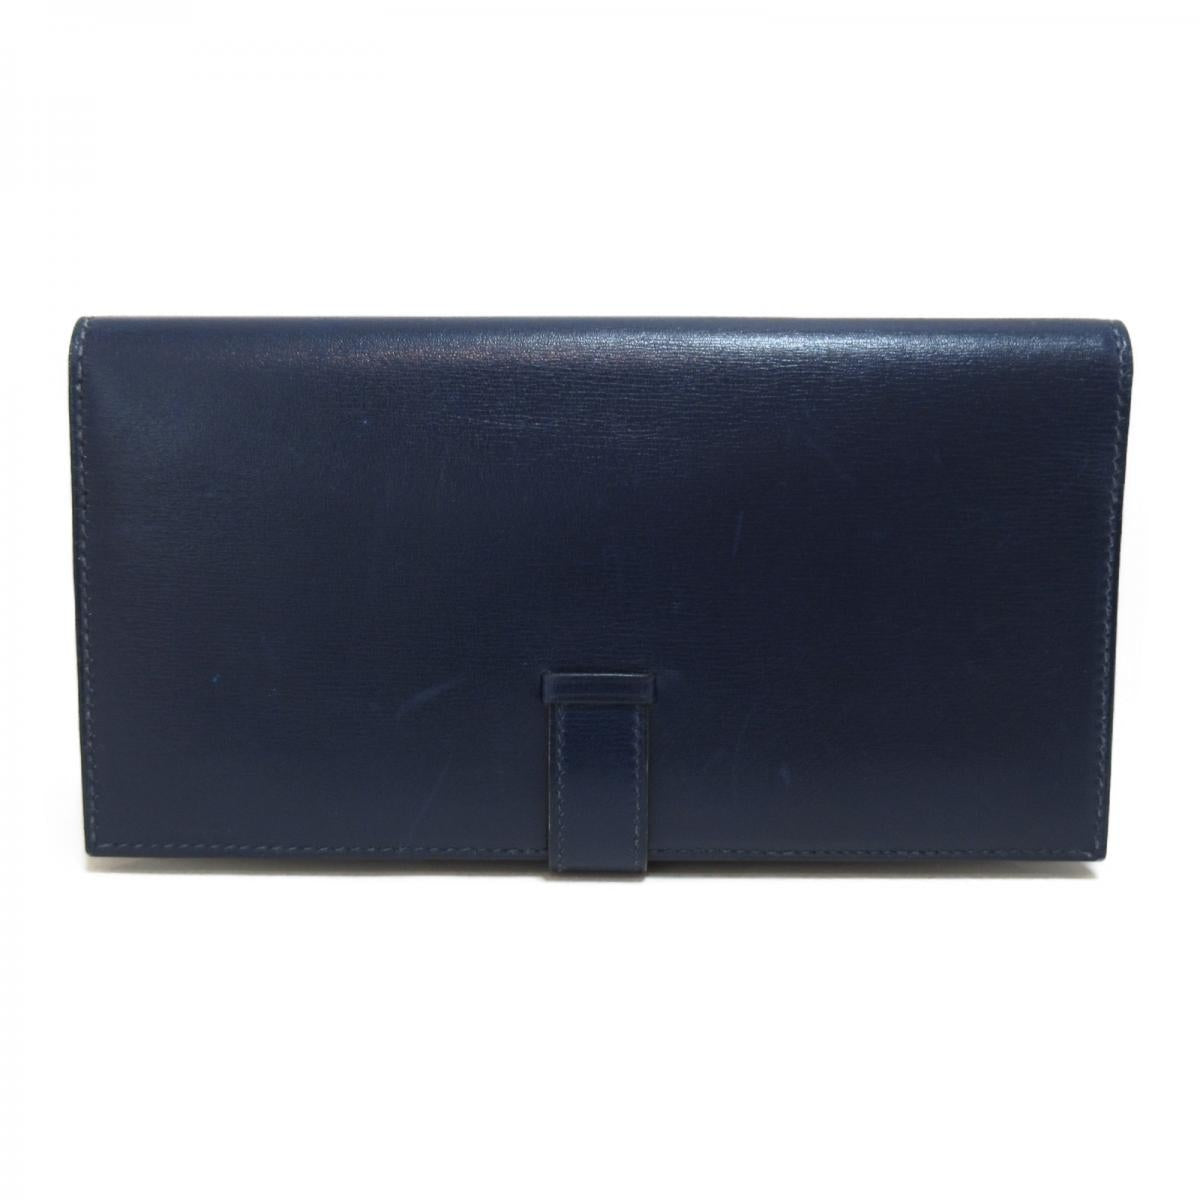 Bearn Leather Long Wallet